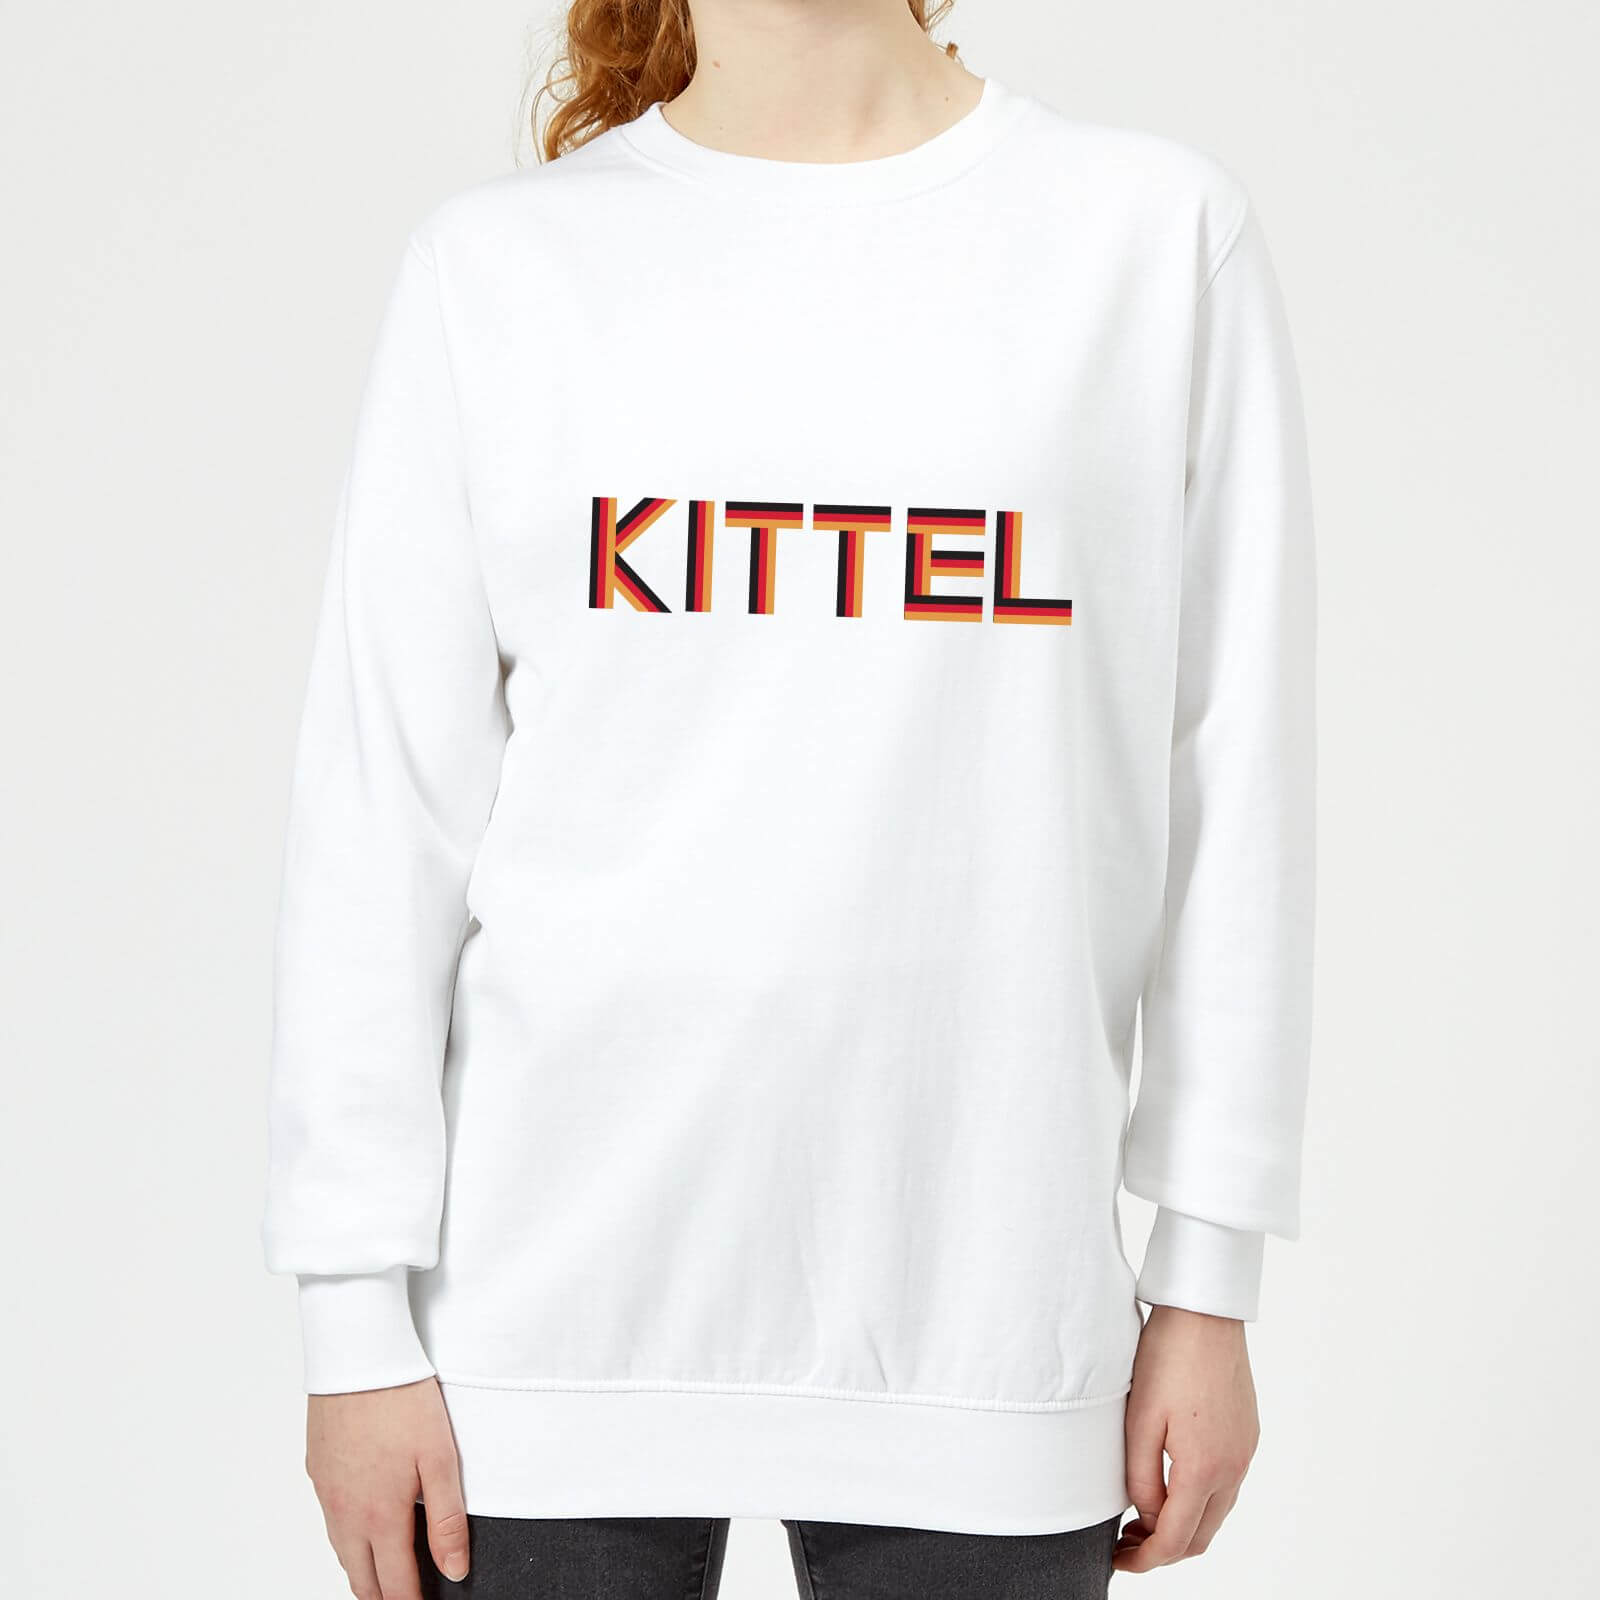 Summit Finish Kittel - Rider Name Women's Sweatshirt - White - M - White